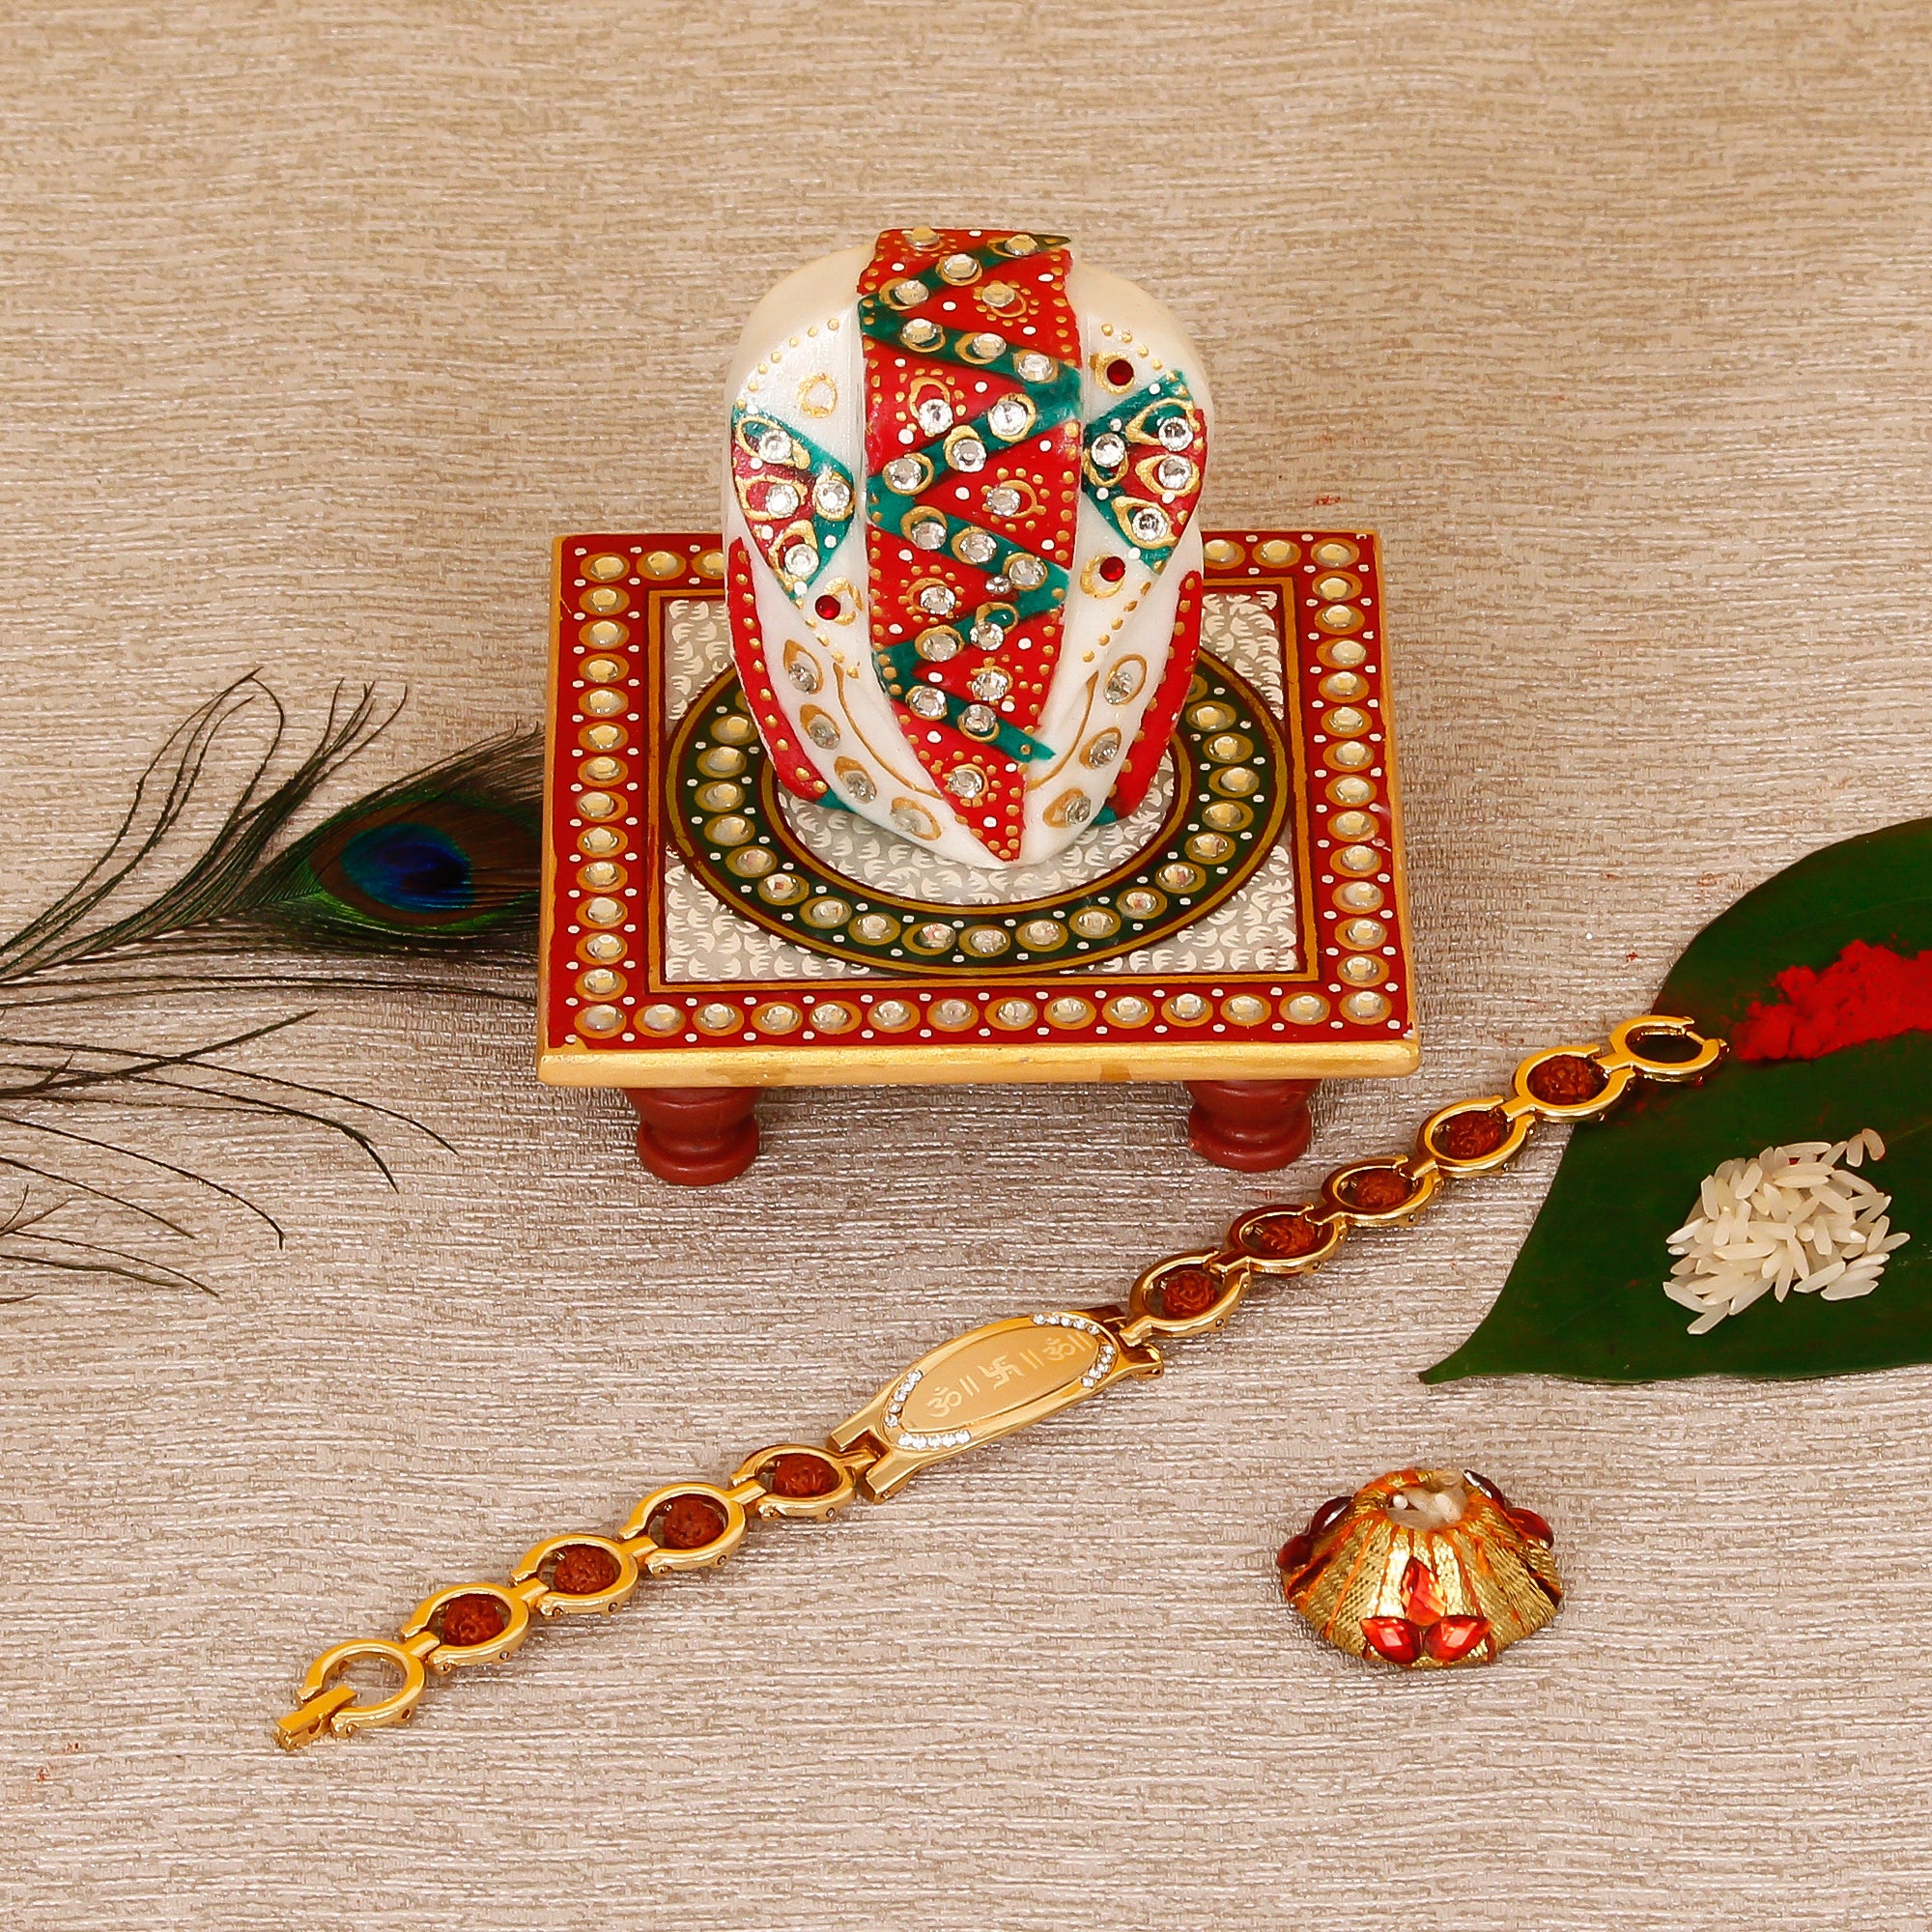 Designer Bracelet Religious Rakhi with Lord Ganesha on Kundan Studded Marble Chowki and Roli Tikka Matki